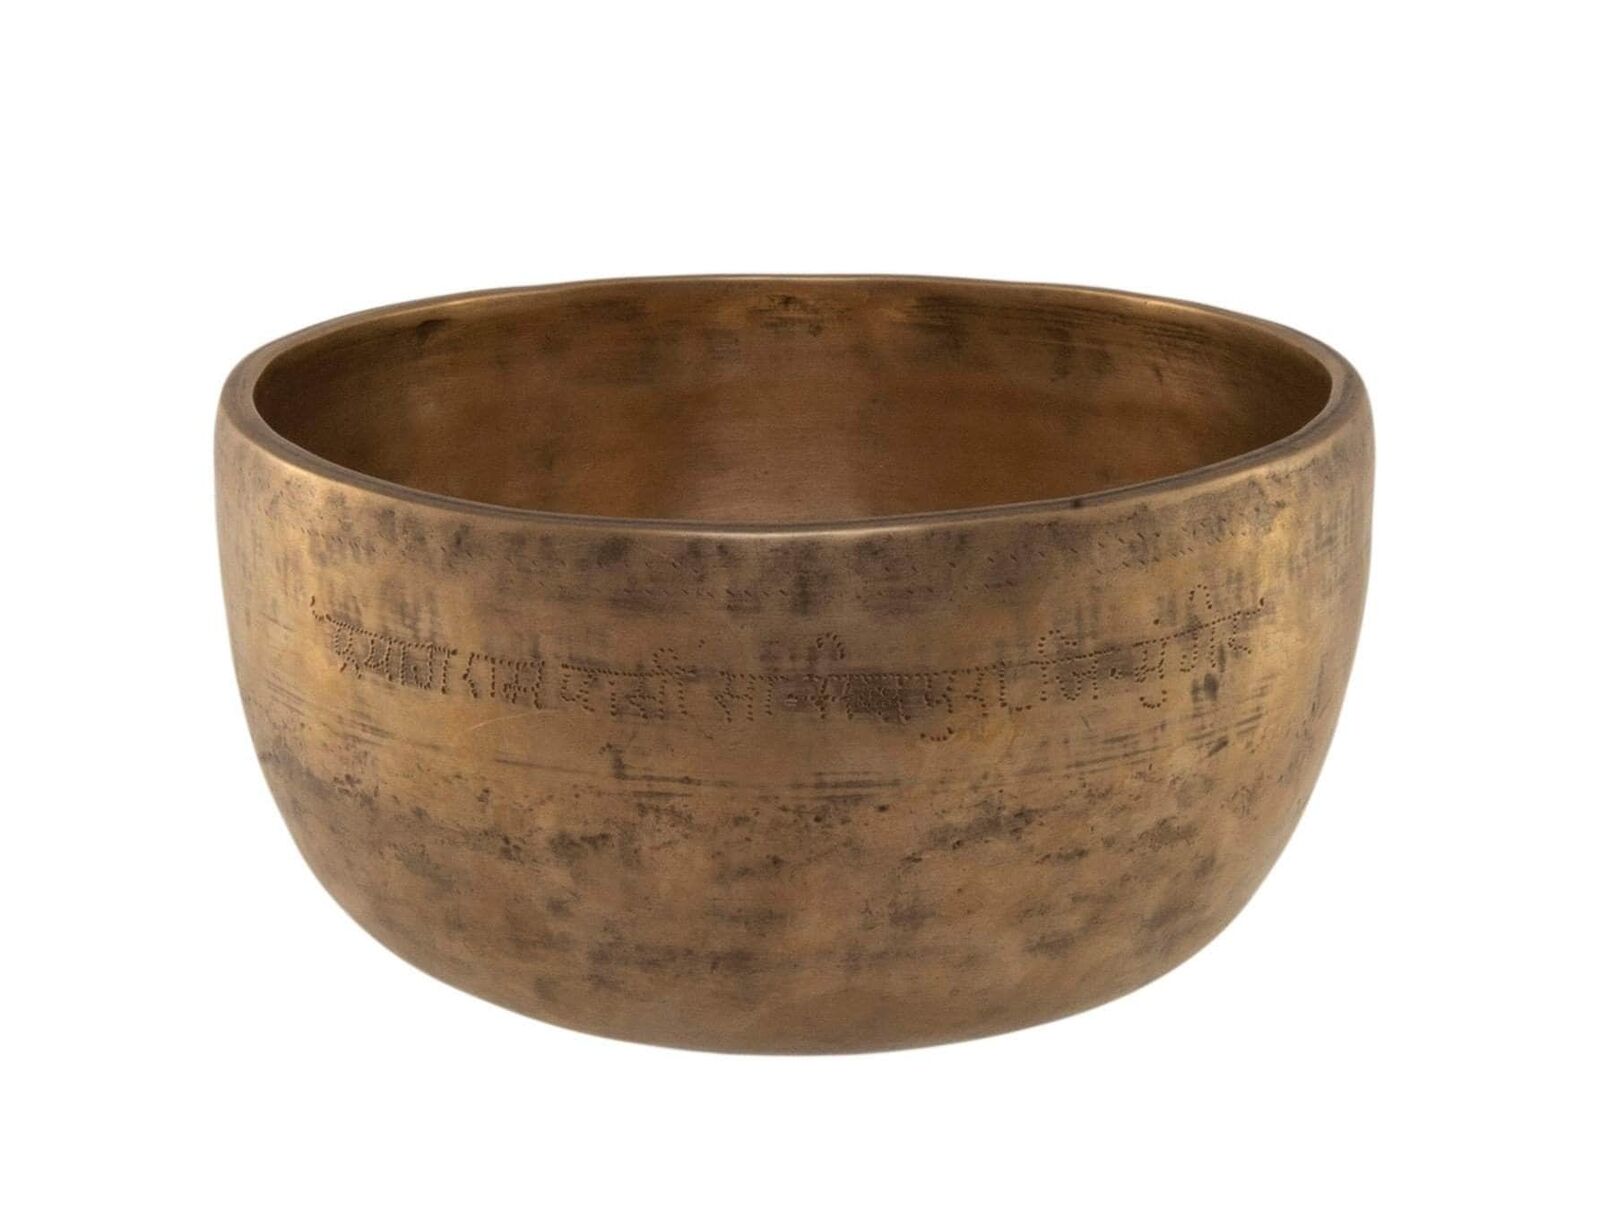 Rare Antique Inscribed Singing Bowl Thadobati Tc#252 7.1/4”x3.5/8” (18.5x9.2cm)